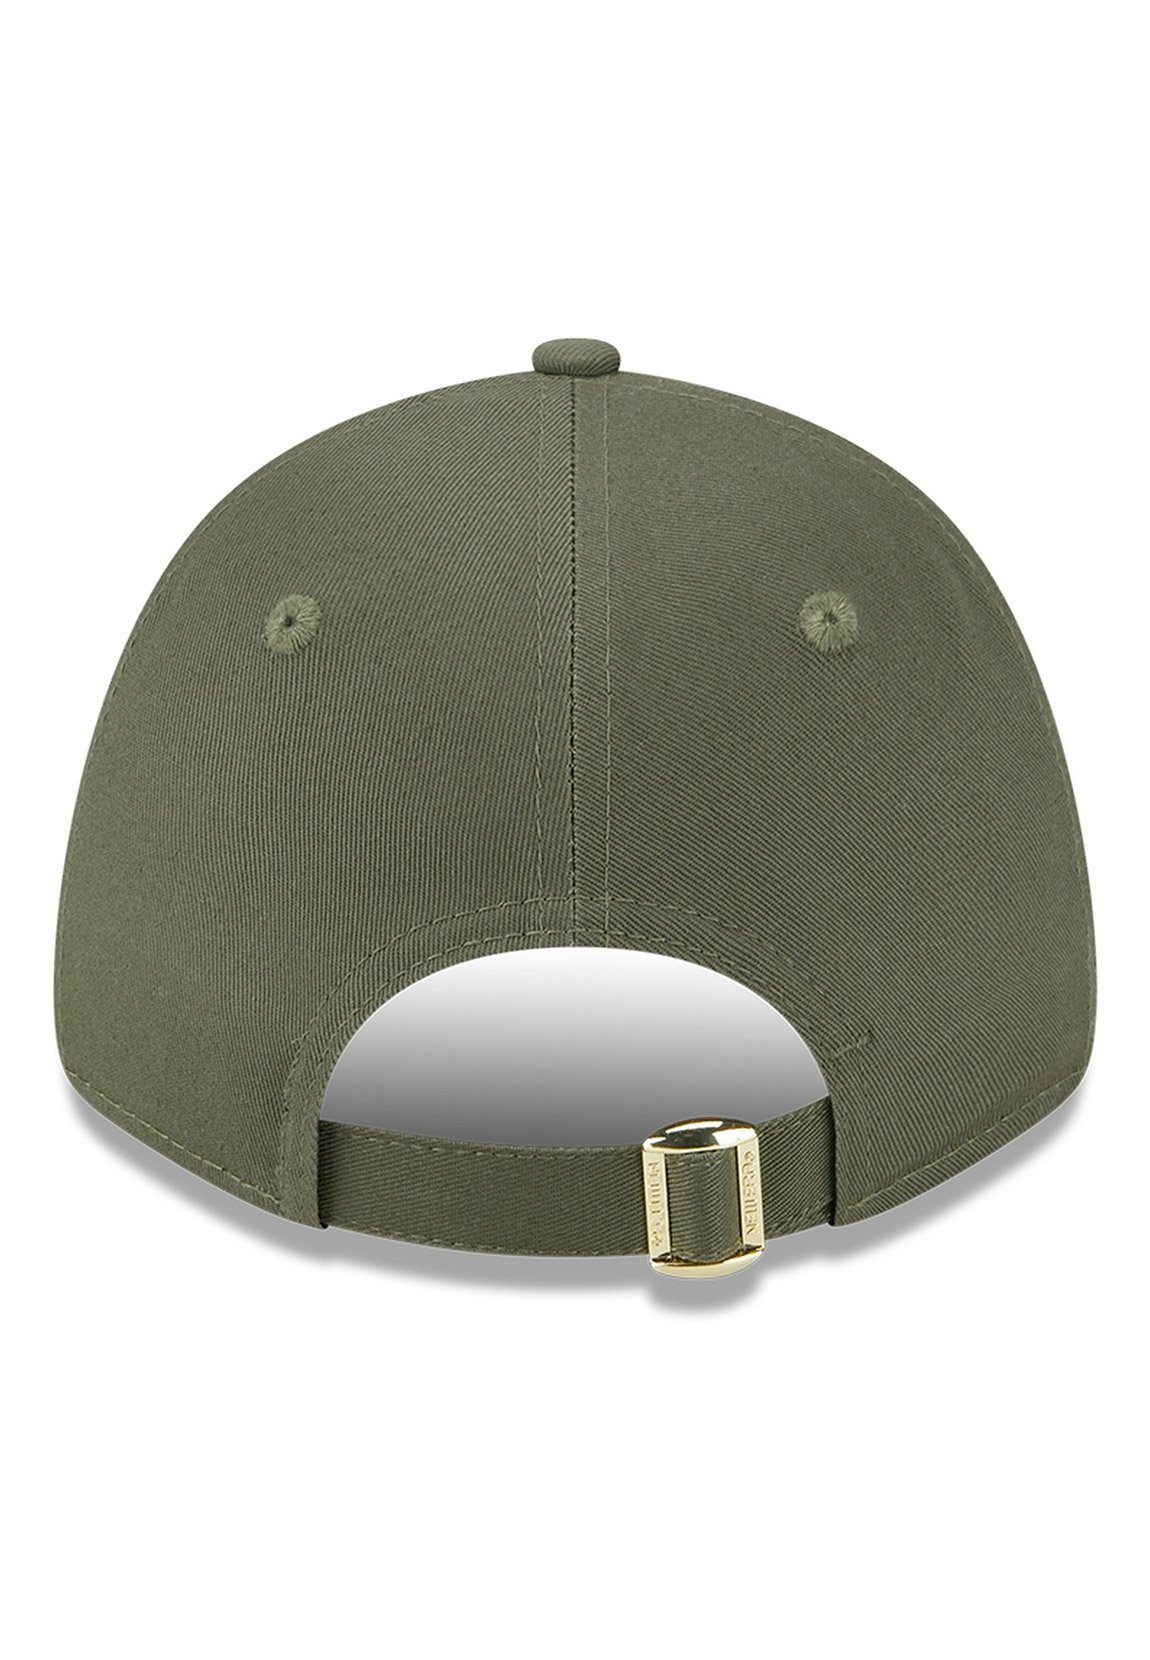 DODGERS New Baseball Metallic Wmns Damen Era Era Logo LA Adjustable 9Forty New Cap Cap